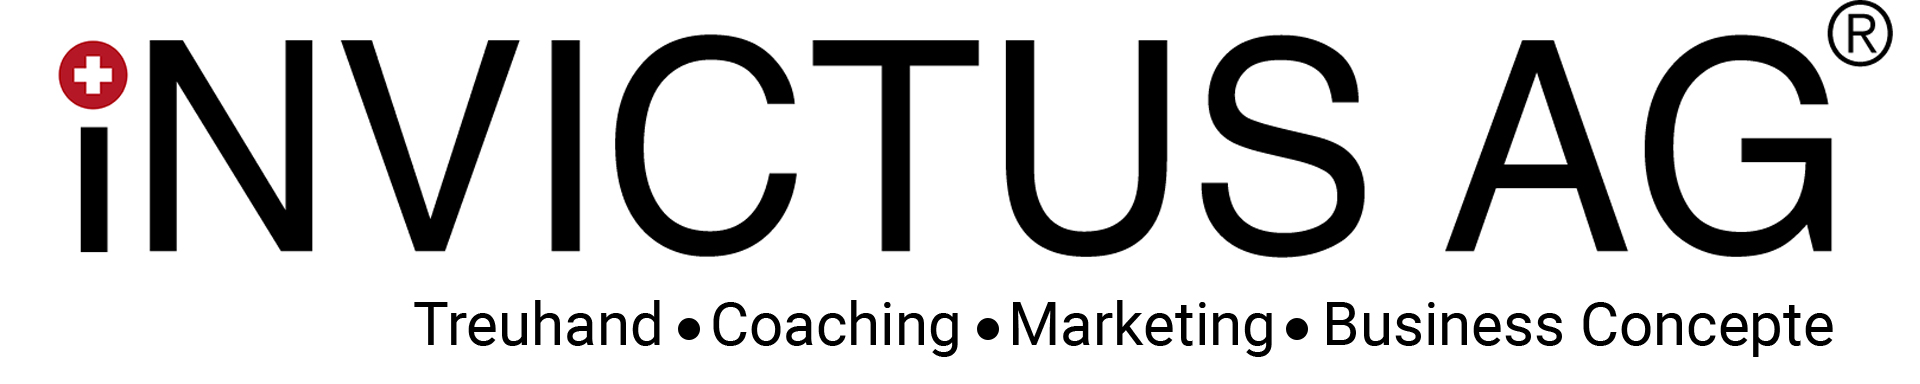 Die Invictus AG ist ein führendes Unternehmen im Bereich digitales Marketing und SEO